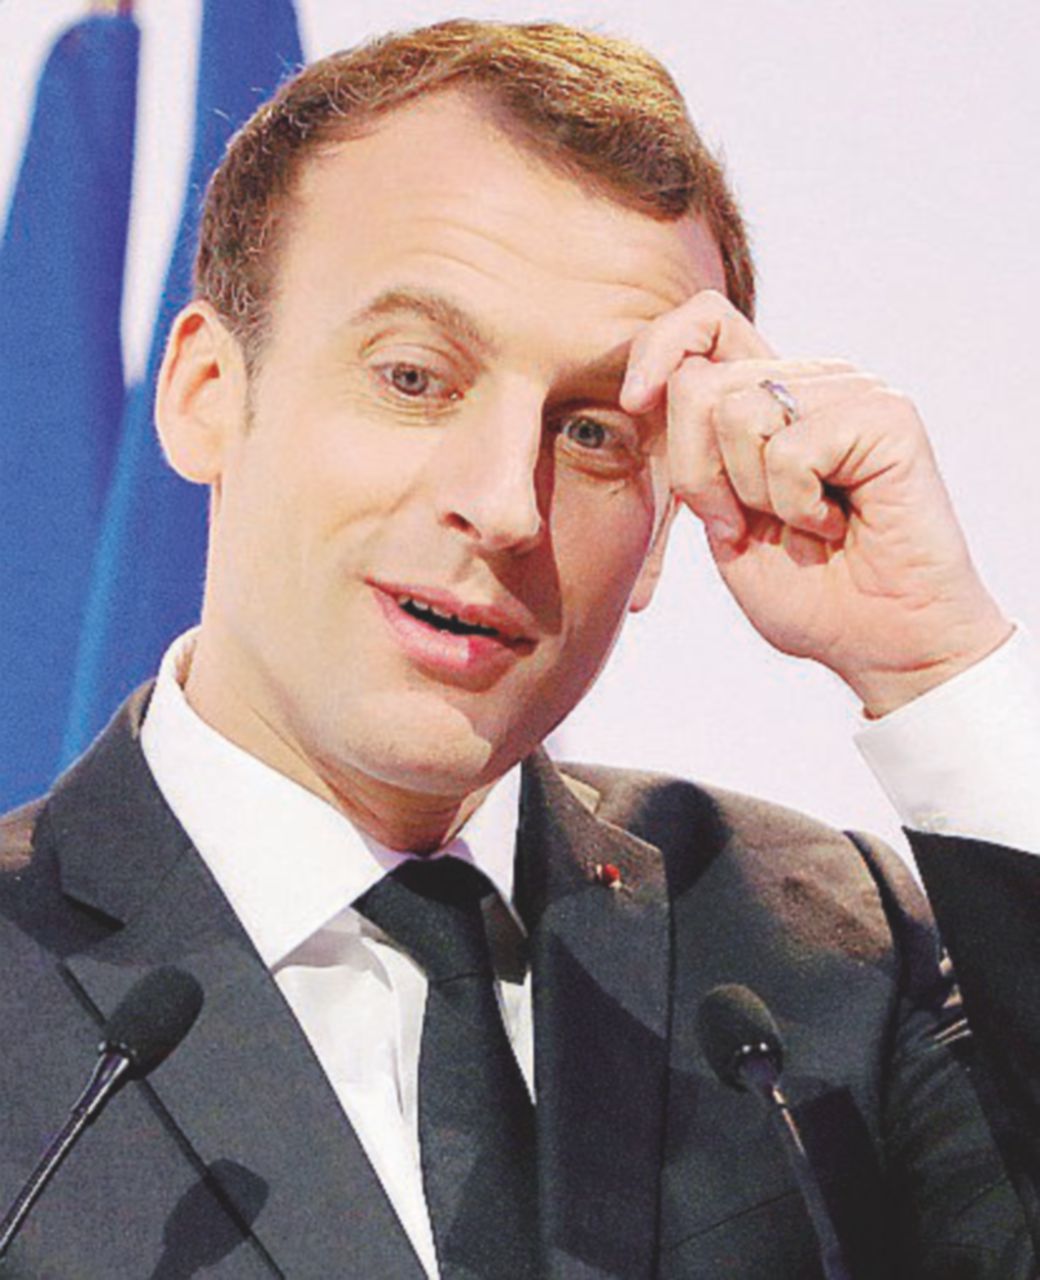 Copertina di “Train de vie”, il finale lo riscrive Macron